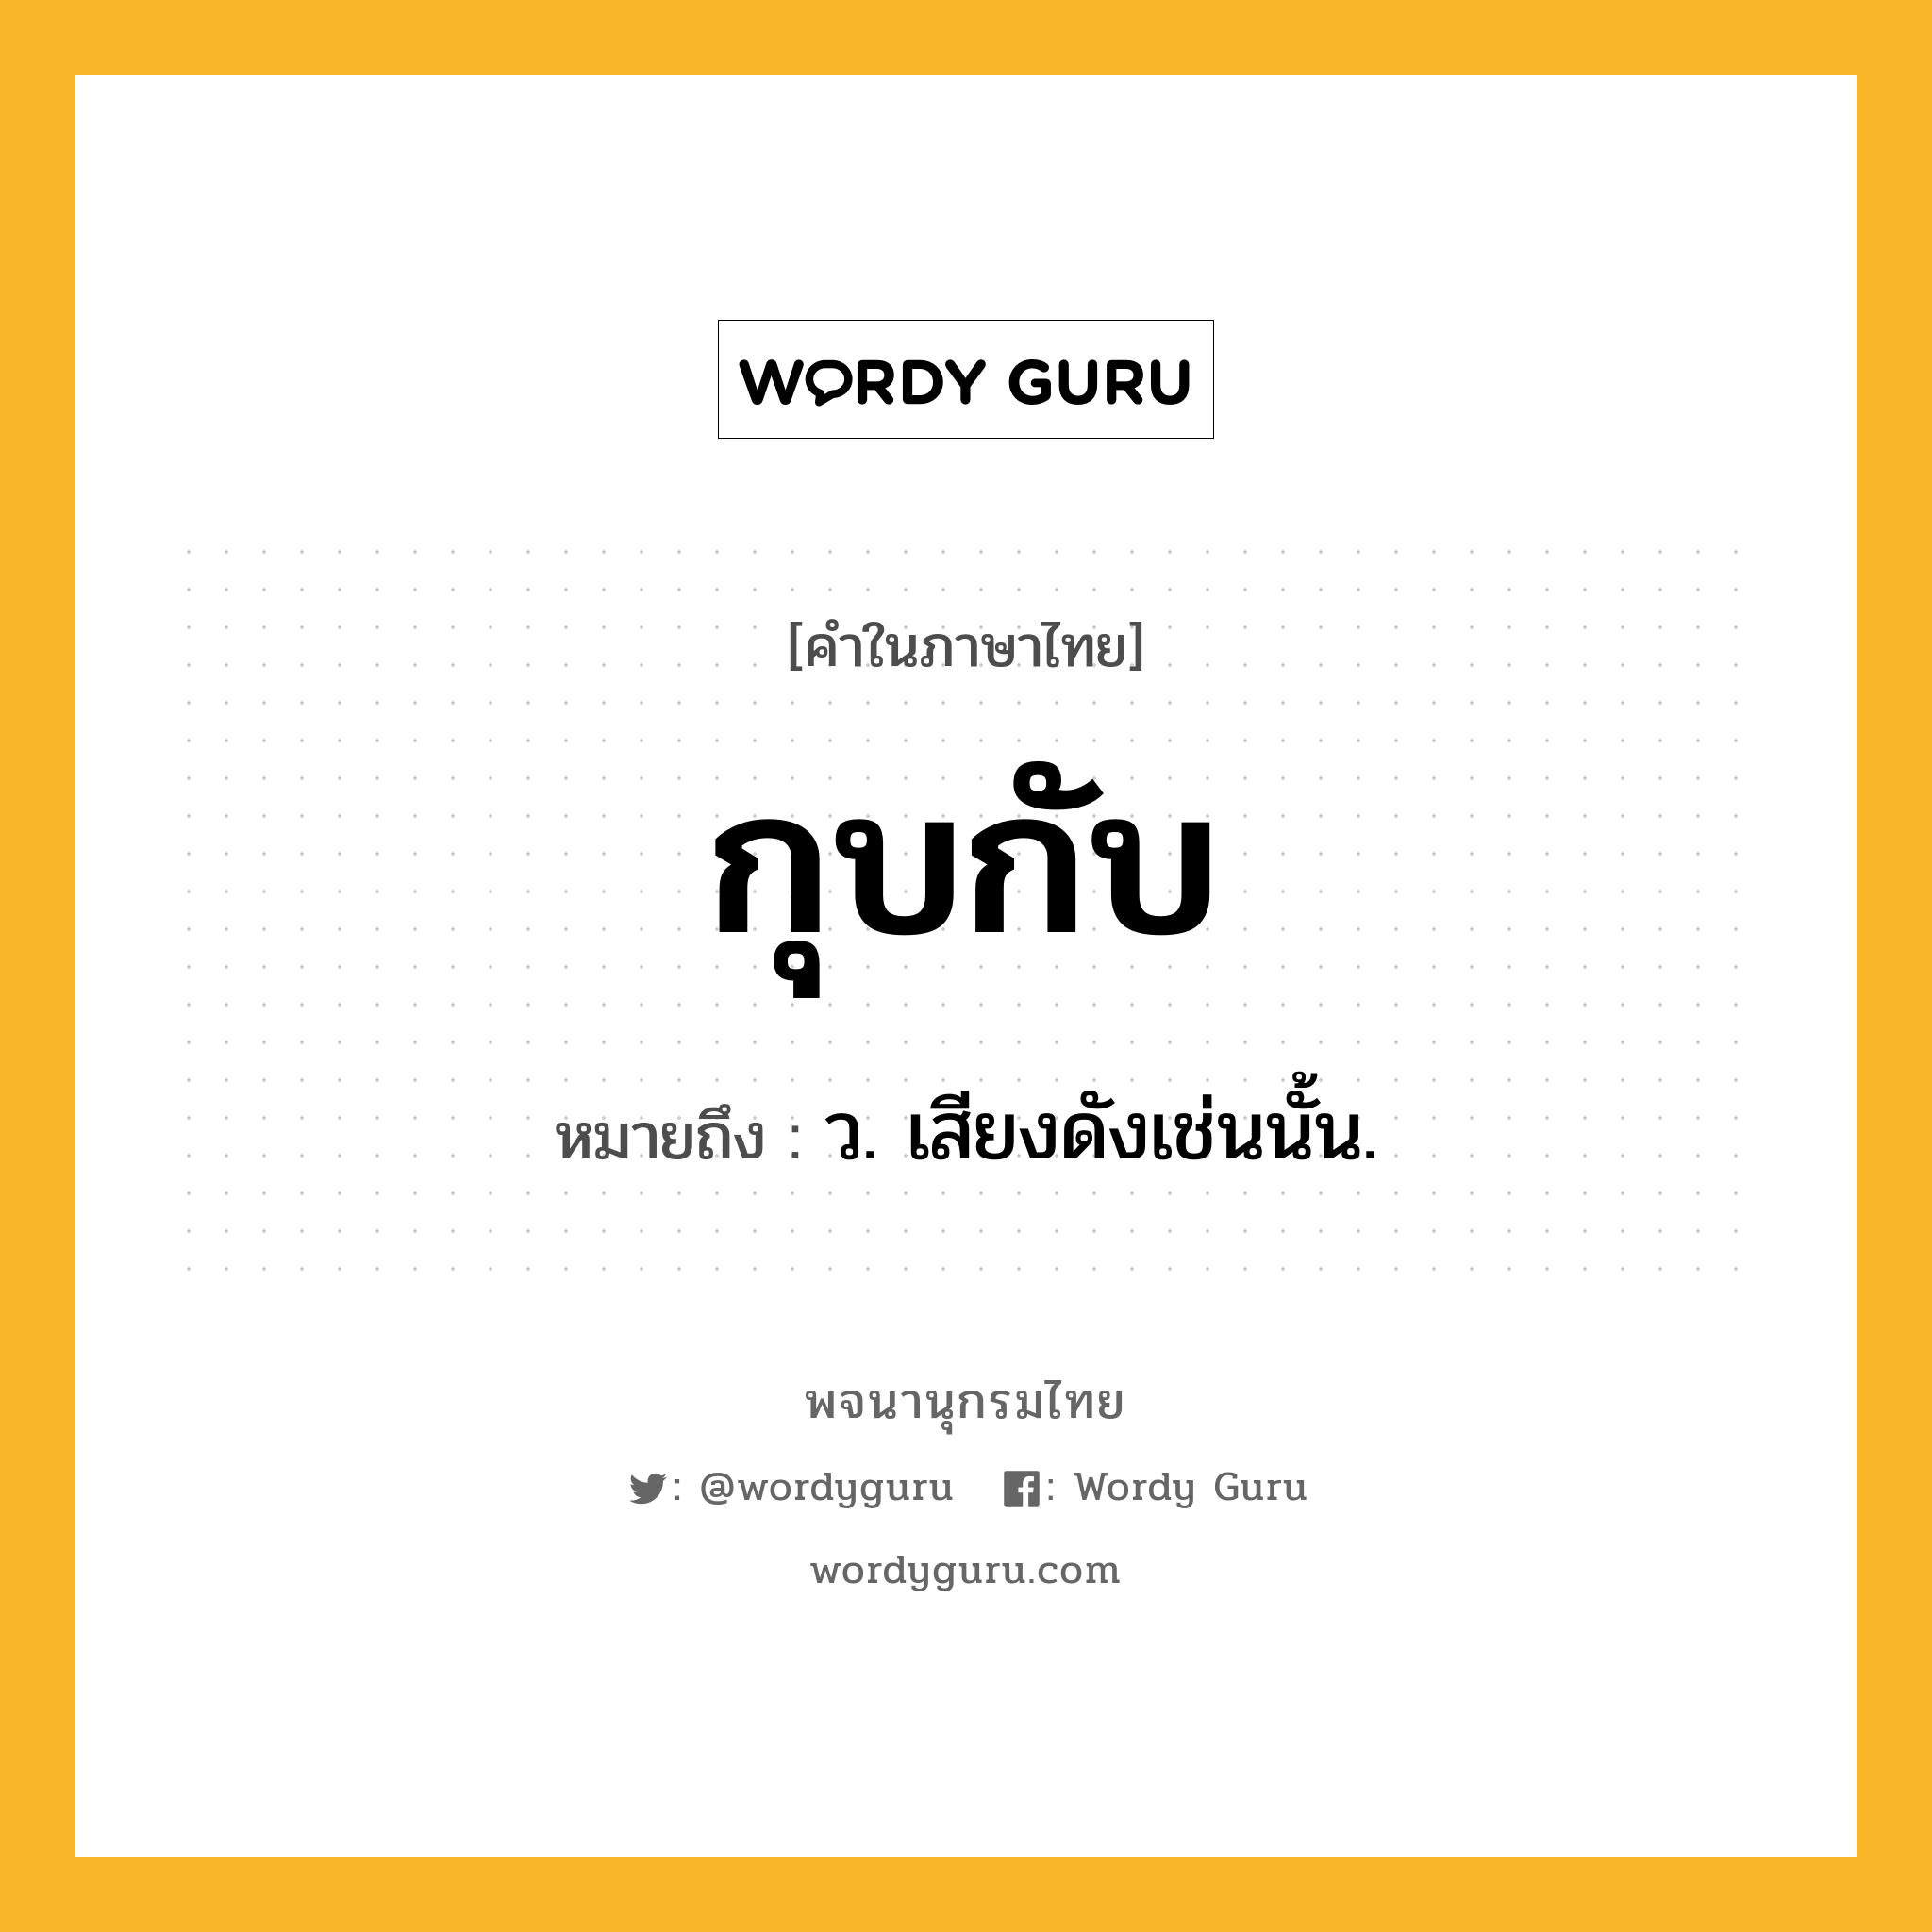 กุบกับ หมายถึงอะไร?, คำในภาษาไทย กุบกับ หมายถึง ว. เสียงดังเช่นนั้น.